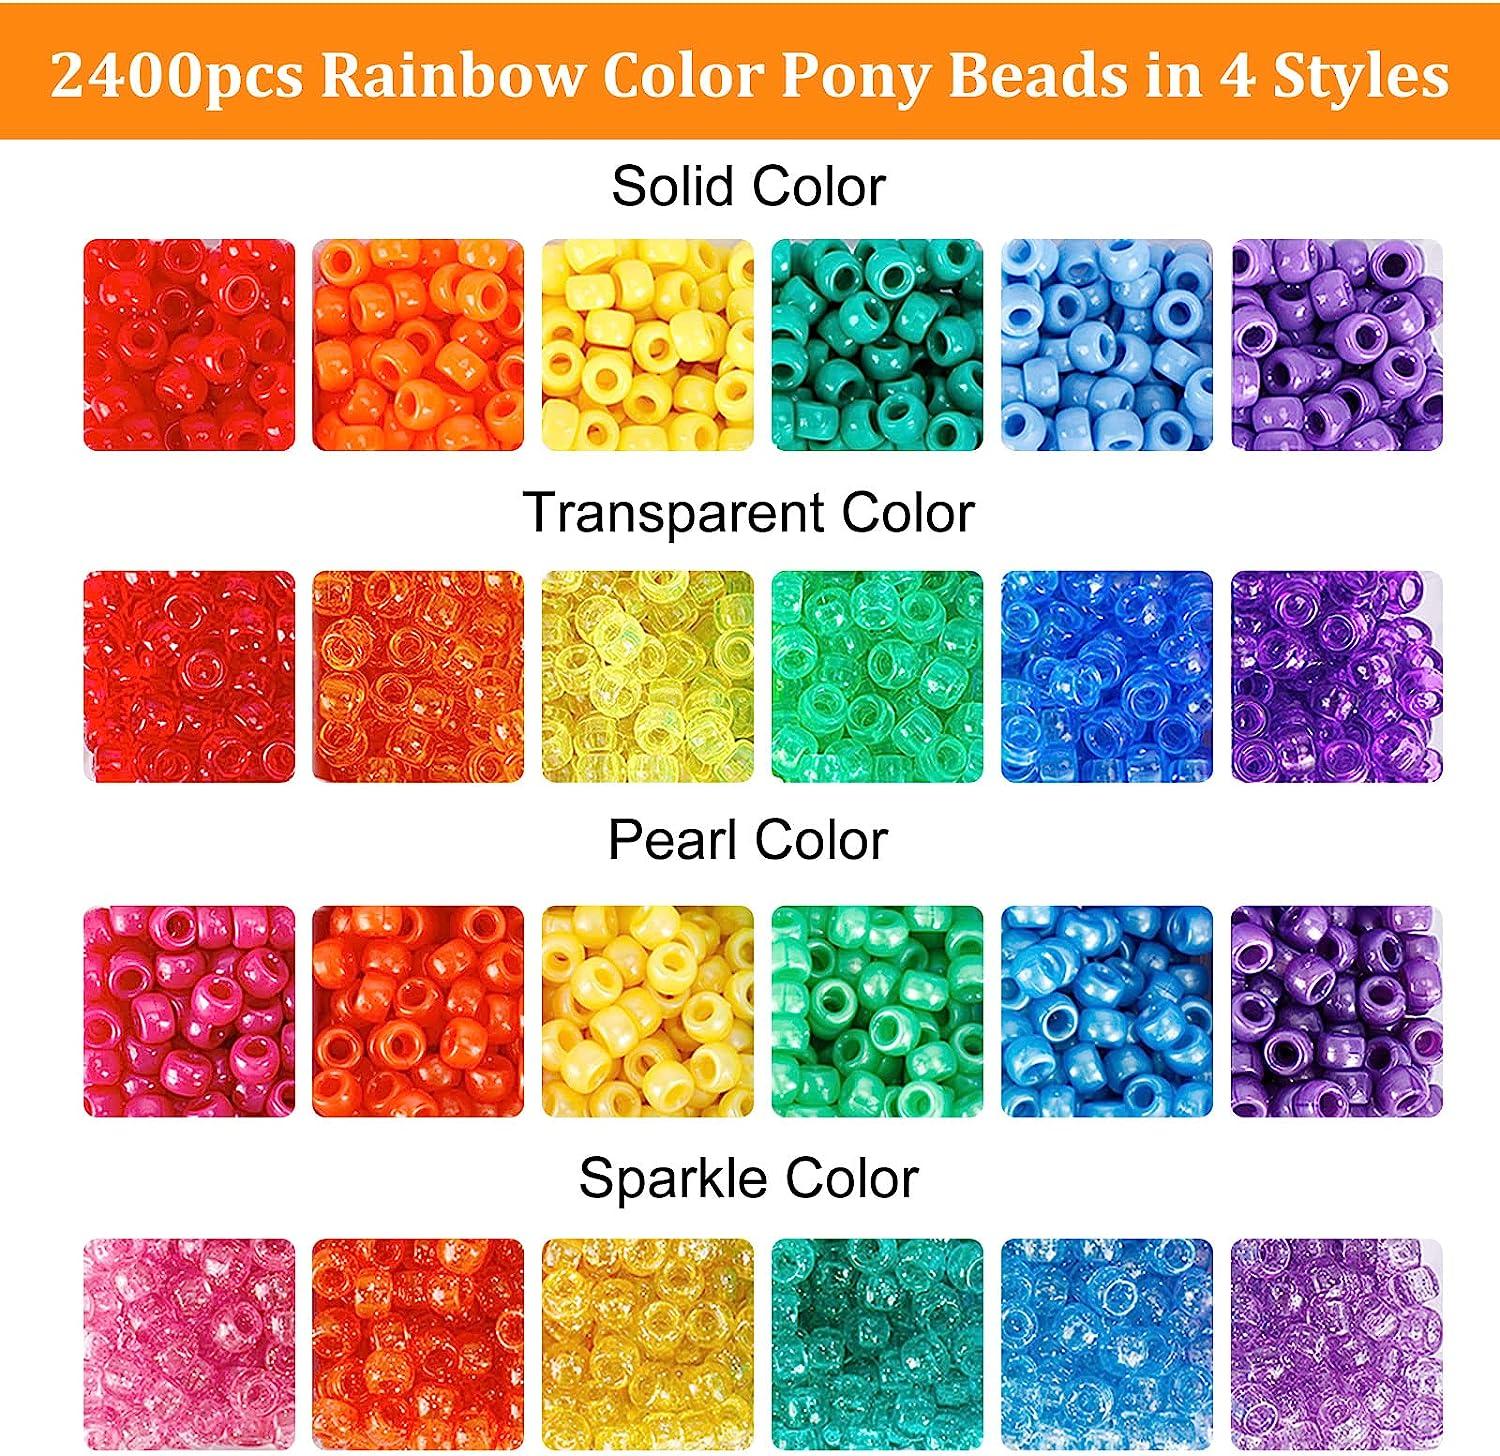 UOONY 4000pcs Pony Beads Kit, 2400pcs Rainbow Kandi Beads and